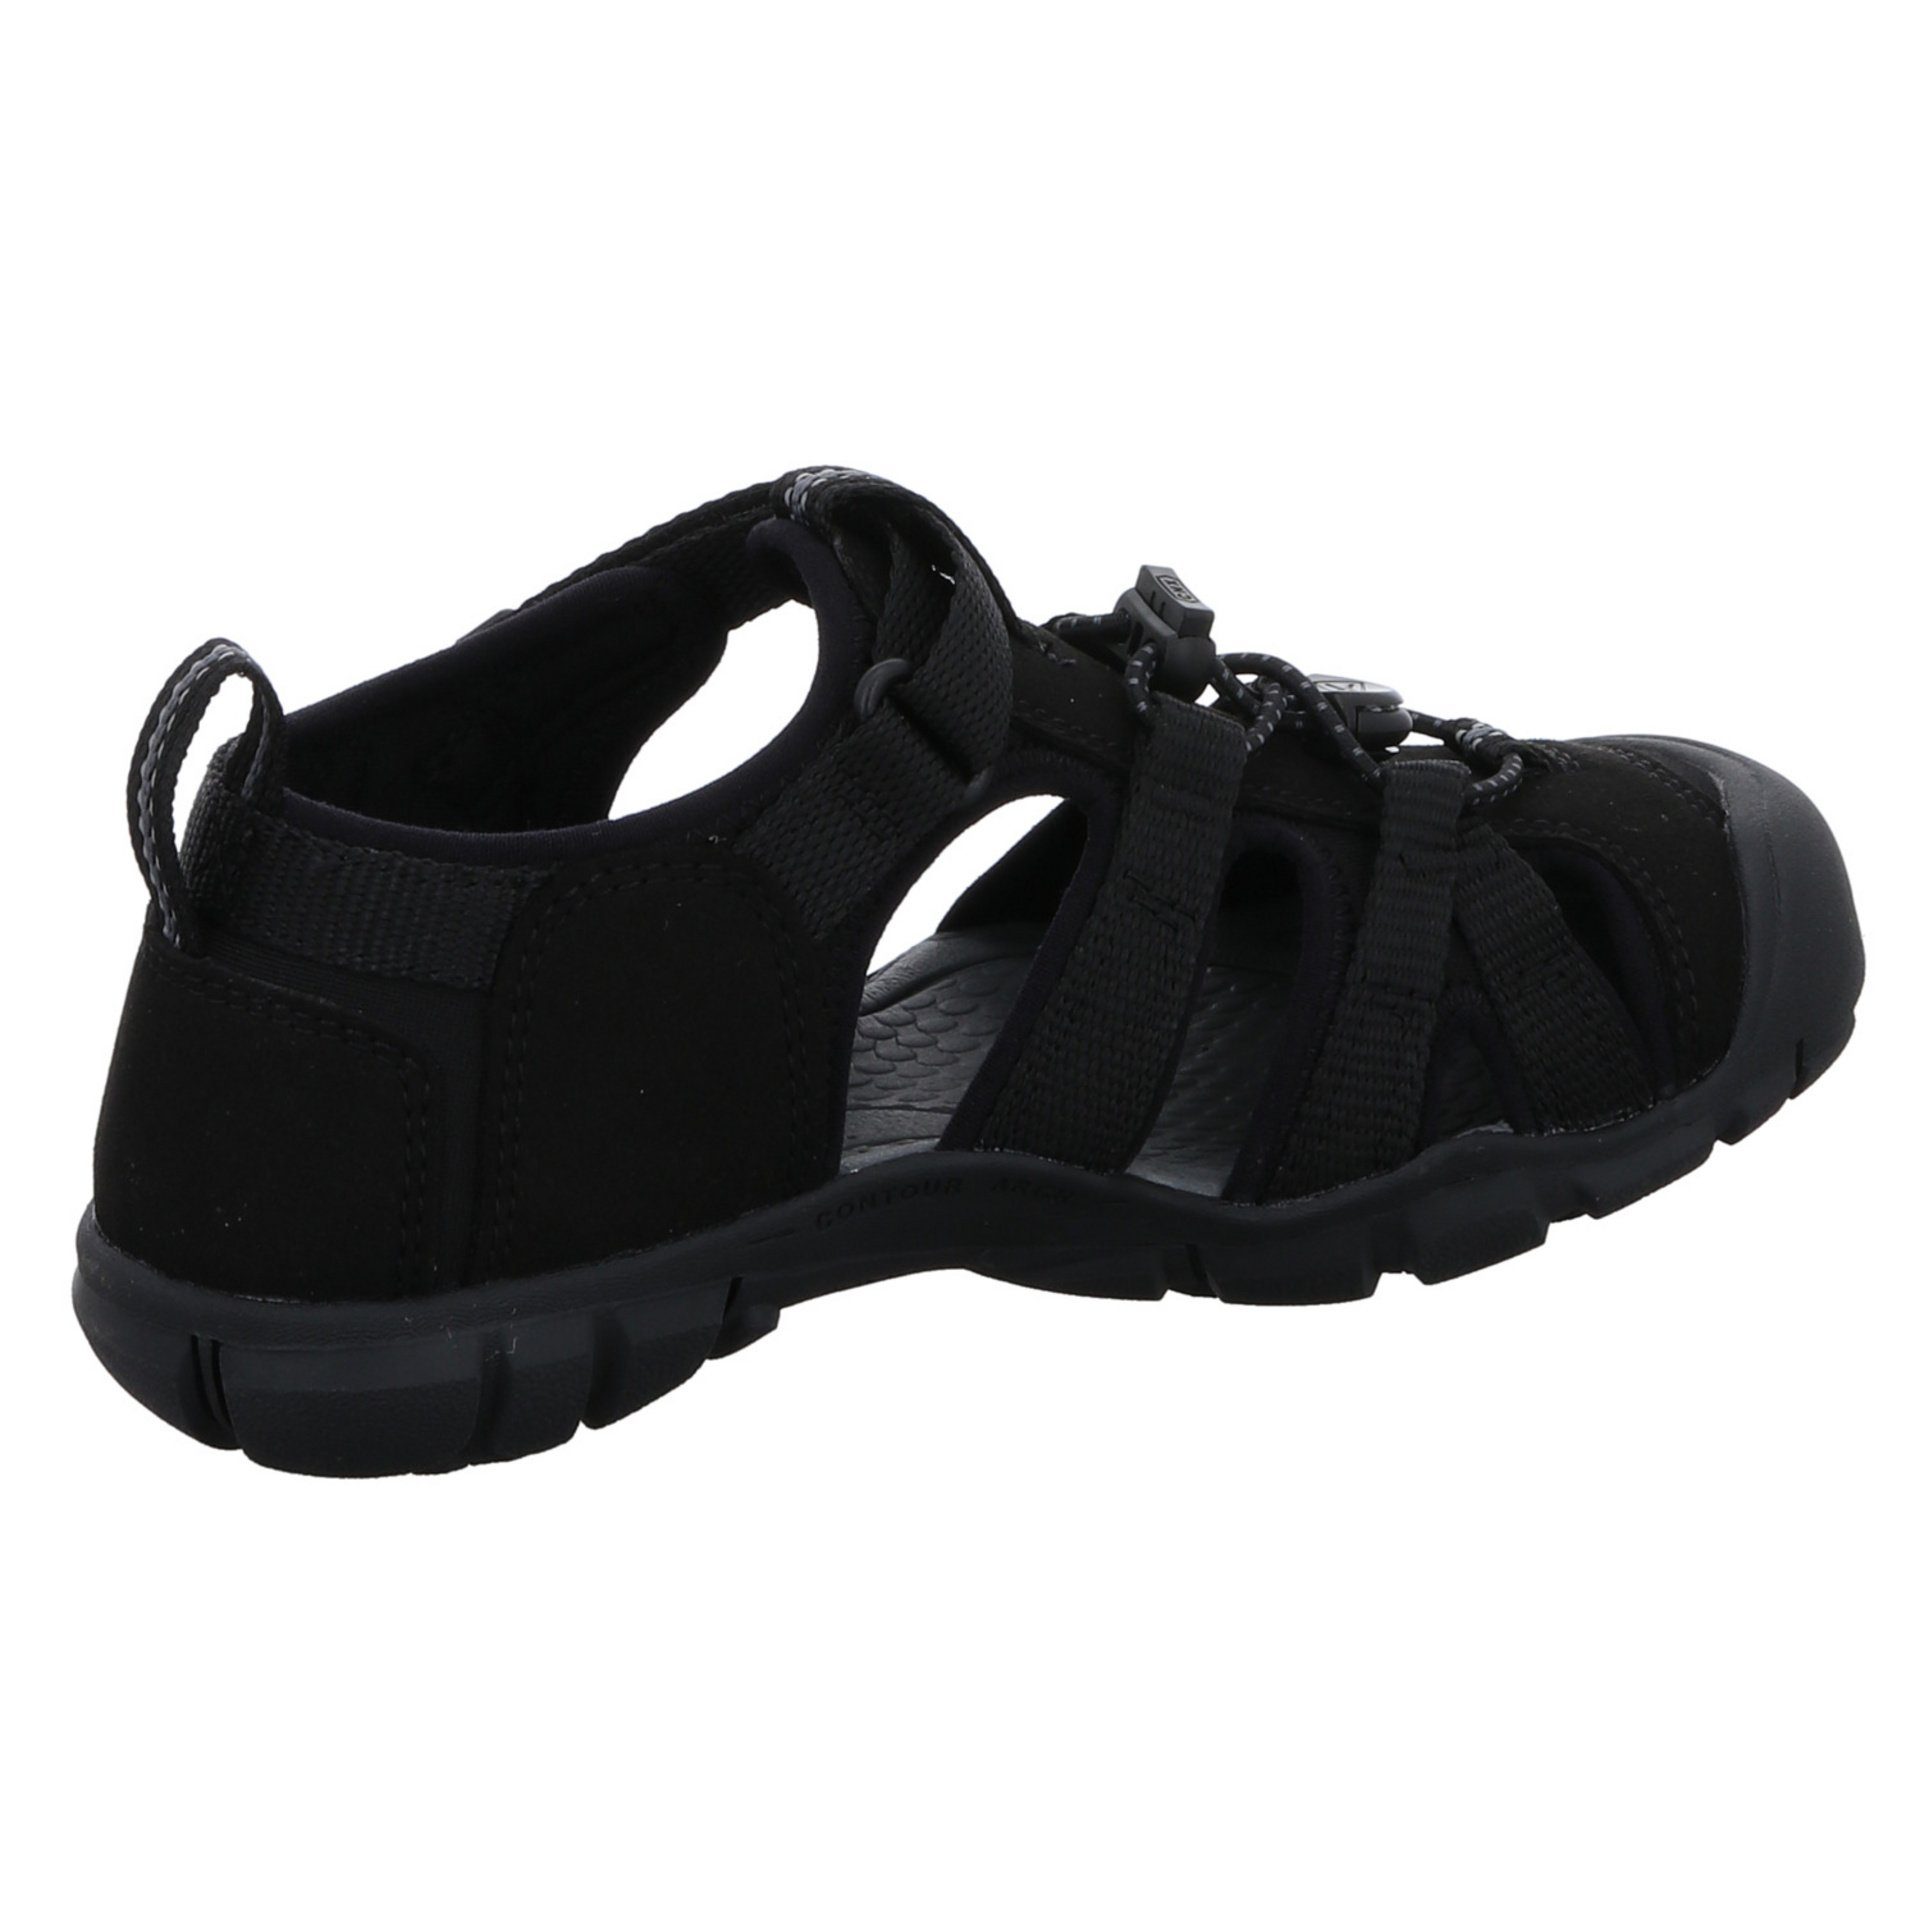 Schuhe Textil dunkel schwarz Keen Sandale Jungen Sandalen